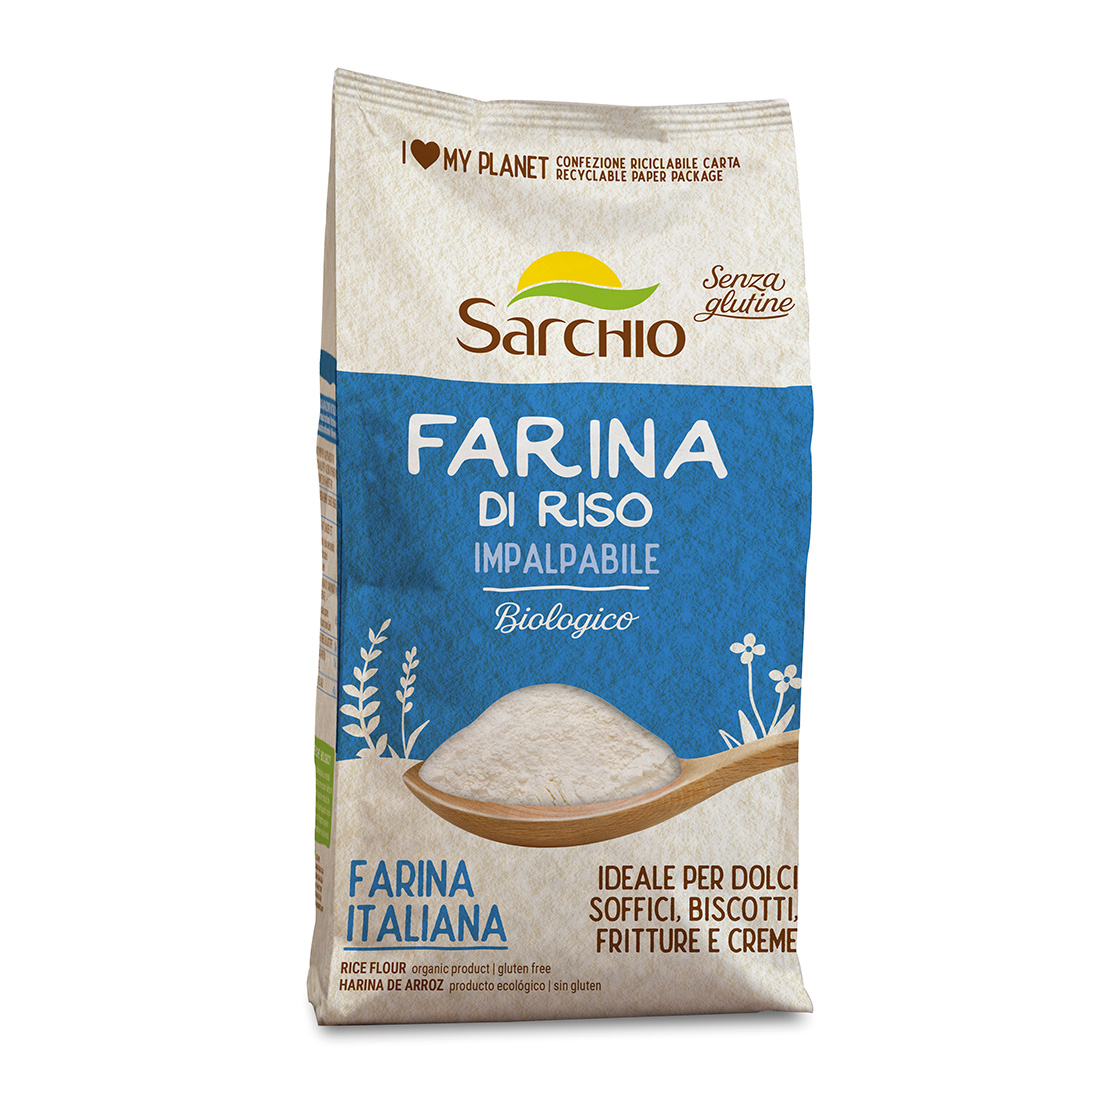 Ultra fine rice flour 